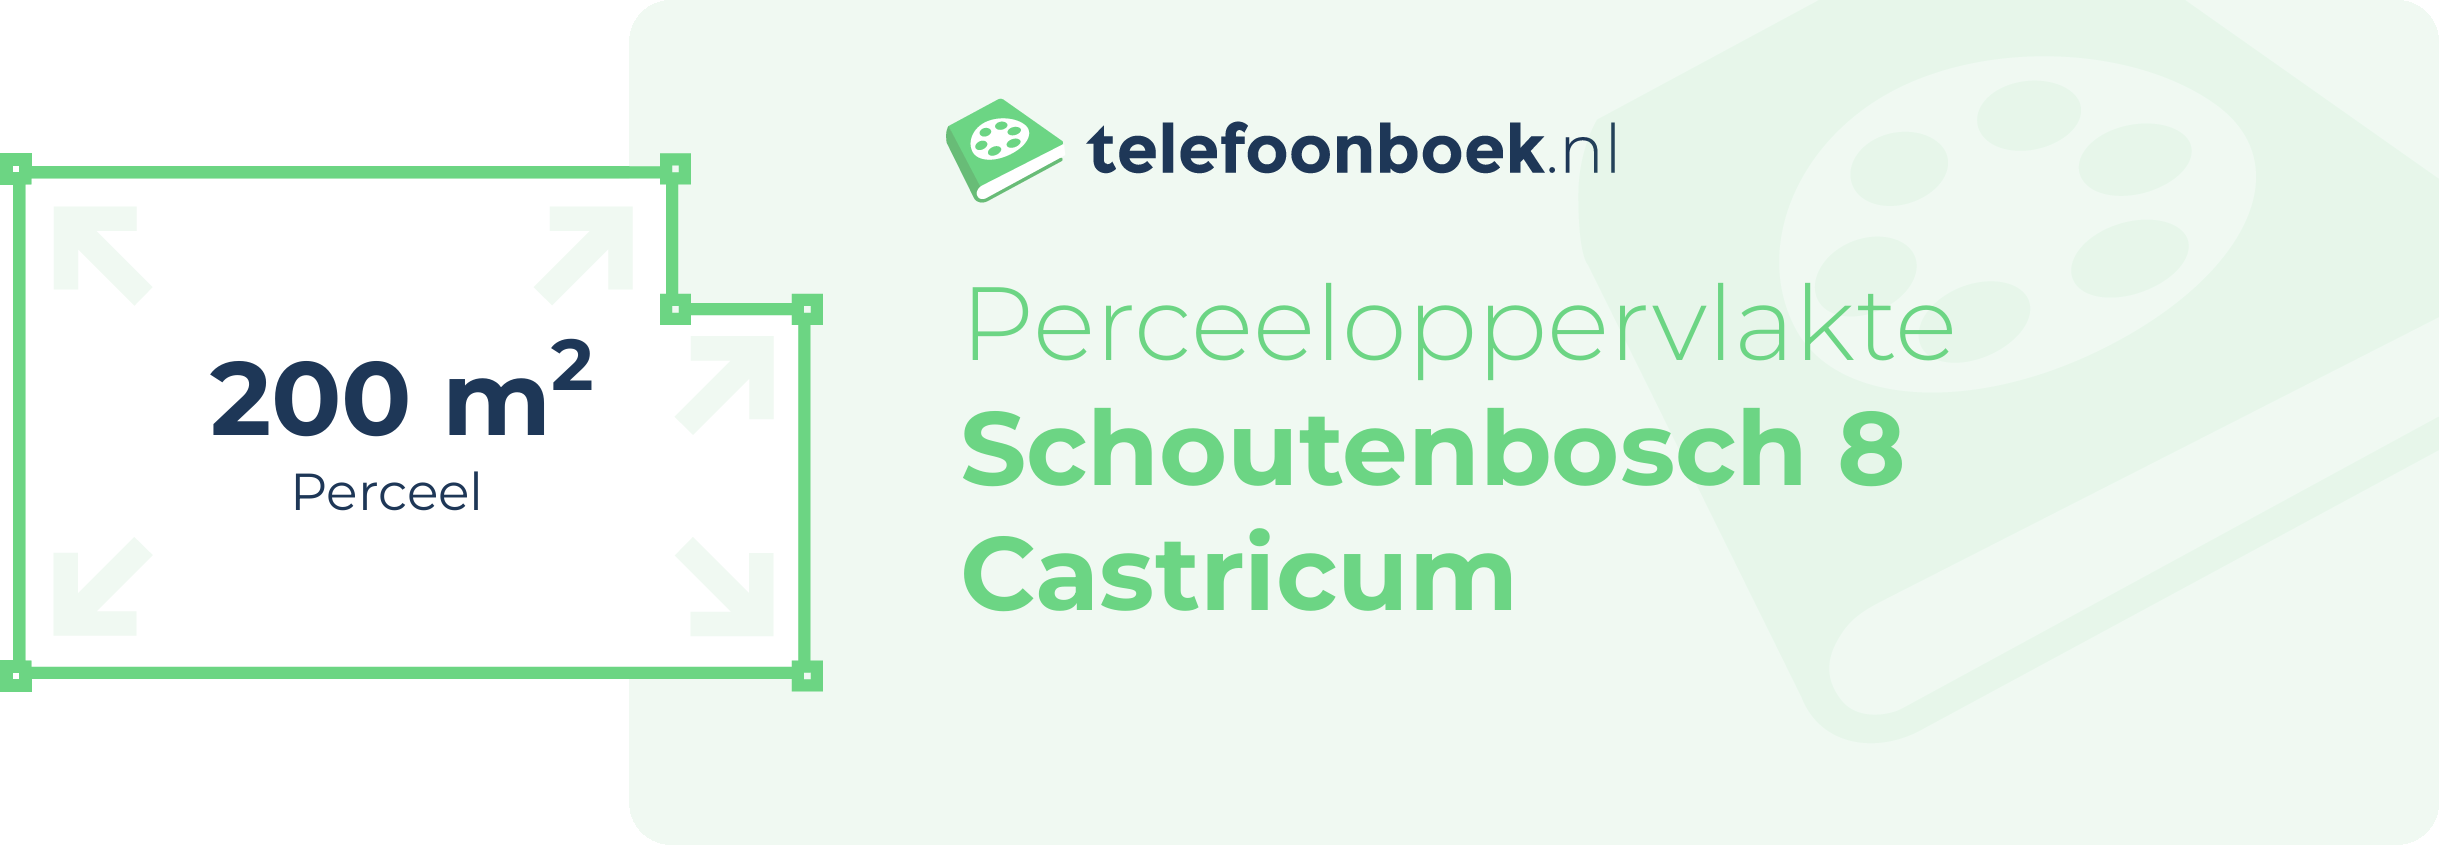 Perceeloppervlakte Schoutenbosch 8 Castricum